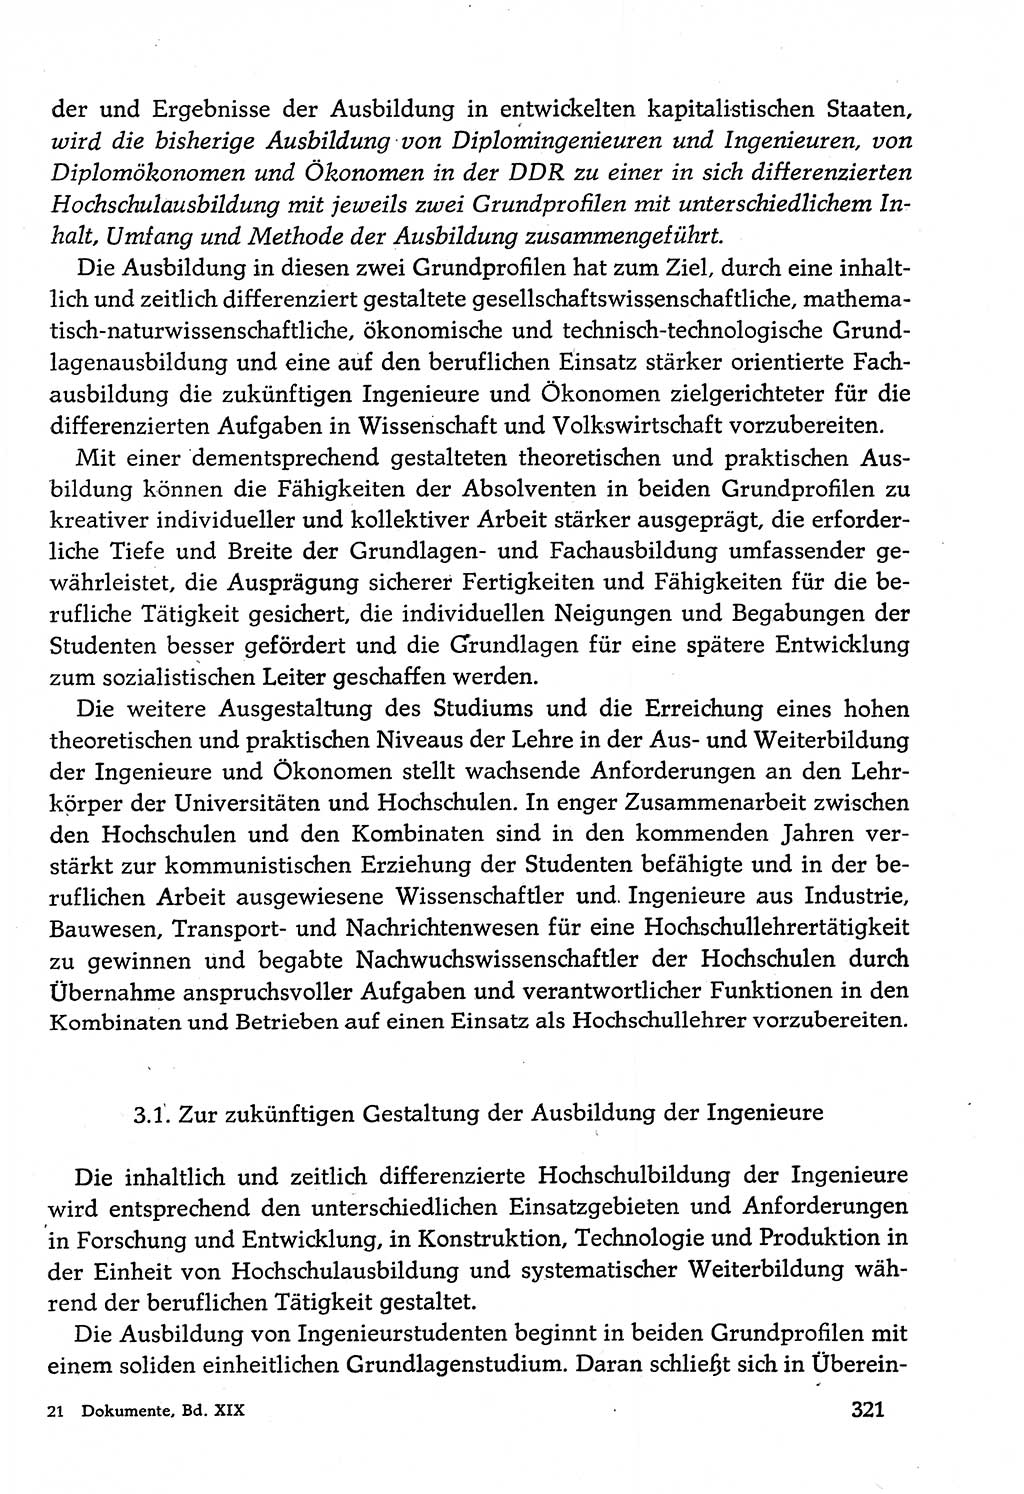 Dokumente der Sozialistischen Einheitspartei Deutschlands (SED) [Deutsche Demokratische Republik (DDR)] 1982-1983, Seite 321 (Dok. SED DDR 1982-1983, S. 321)